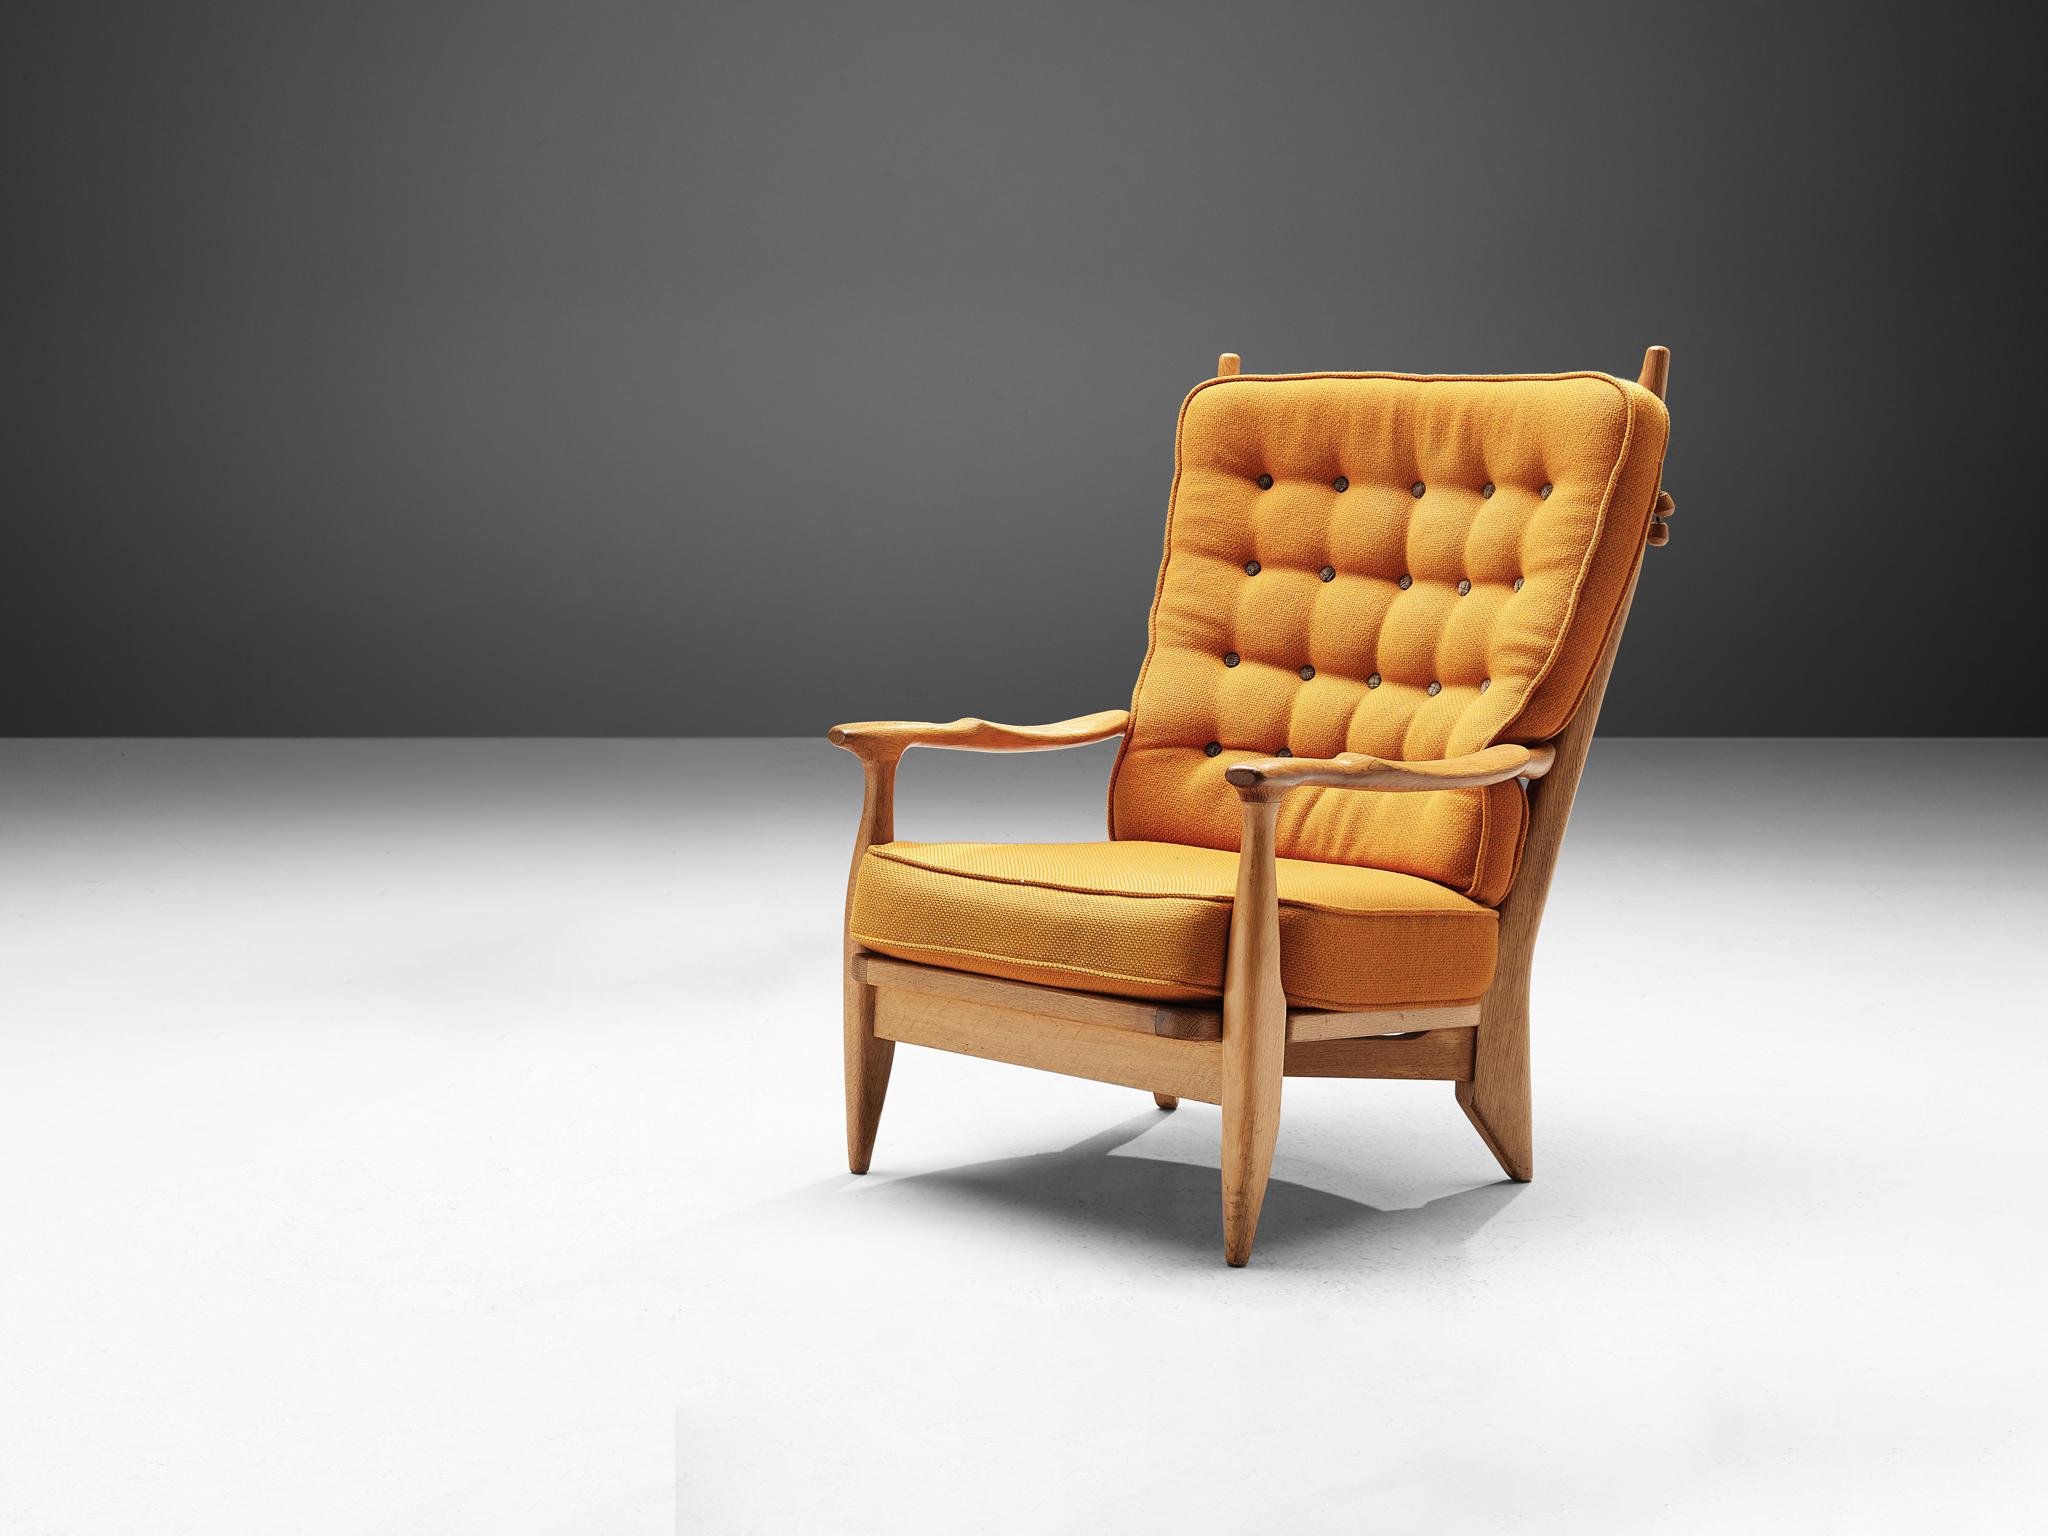 Guillerme et Chambron pour Votre Maison, fauteuil, chêne, tissu, France, années 1960

Guillerme et Chambron sont connus pour leurs meubles en chêne massif de haute qualité, dont ce fauteuil est un autre excellent exemple. Cette chaise longue a une